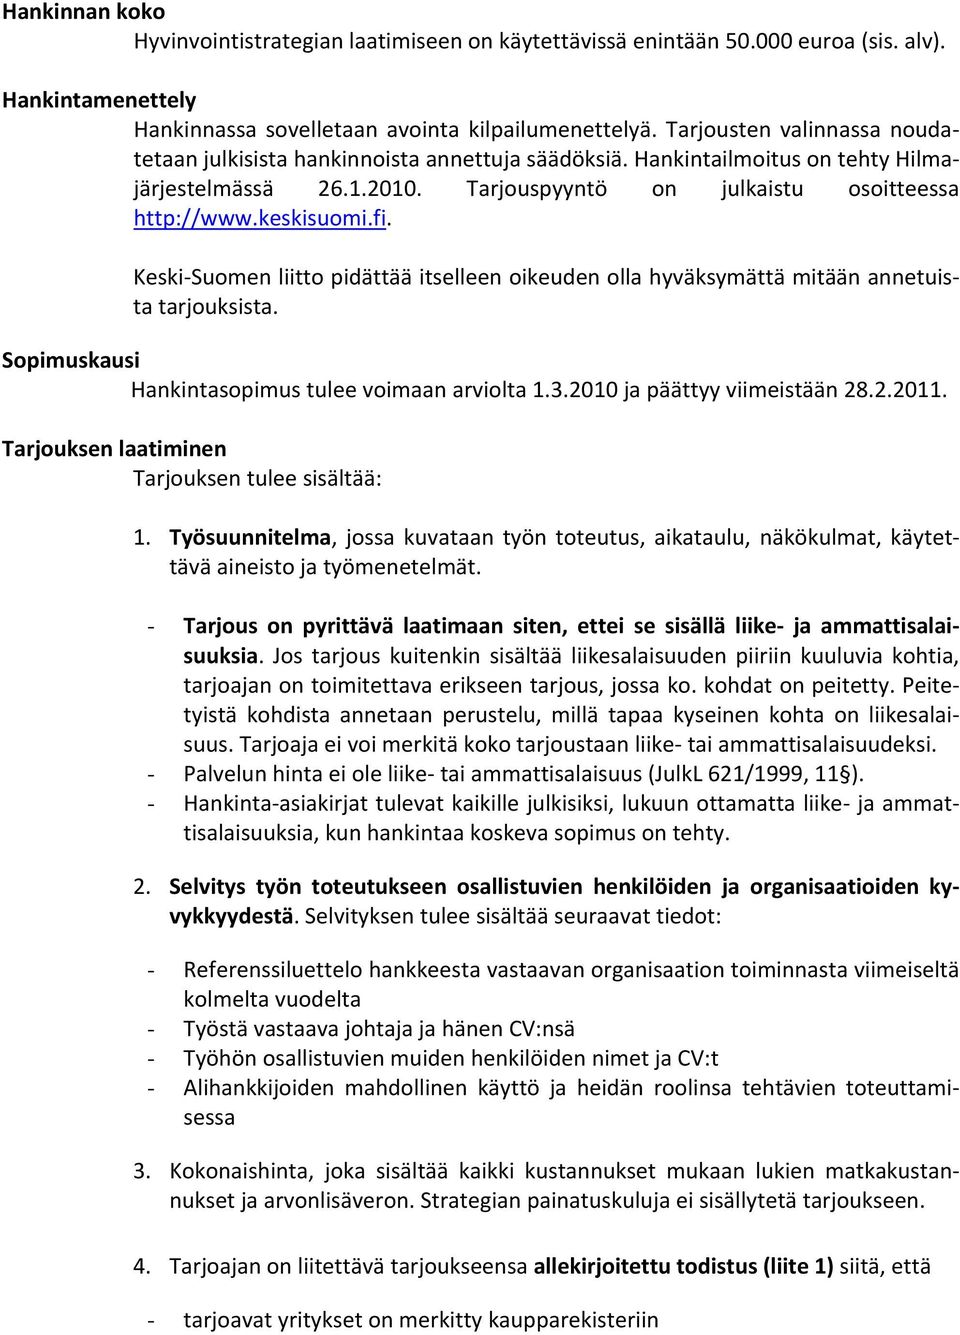 Keski Suomen liitto pidättää itselleen oikeuden olla hyväksymättä mitään annetuista tarjouksista. Sopimuskausi Hankintasopimus tulee voimaan arviolta 1.3.2010 ja päättyy viimeistään 28.2.2011.